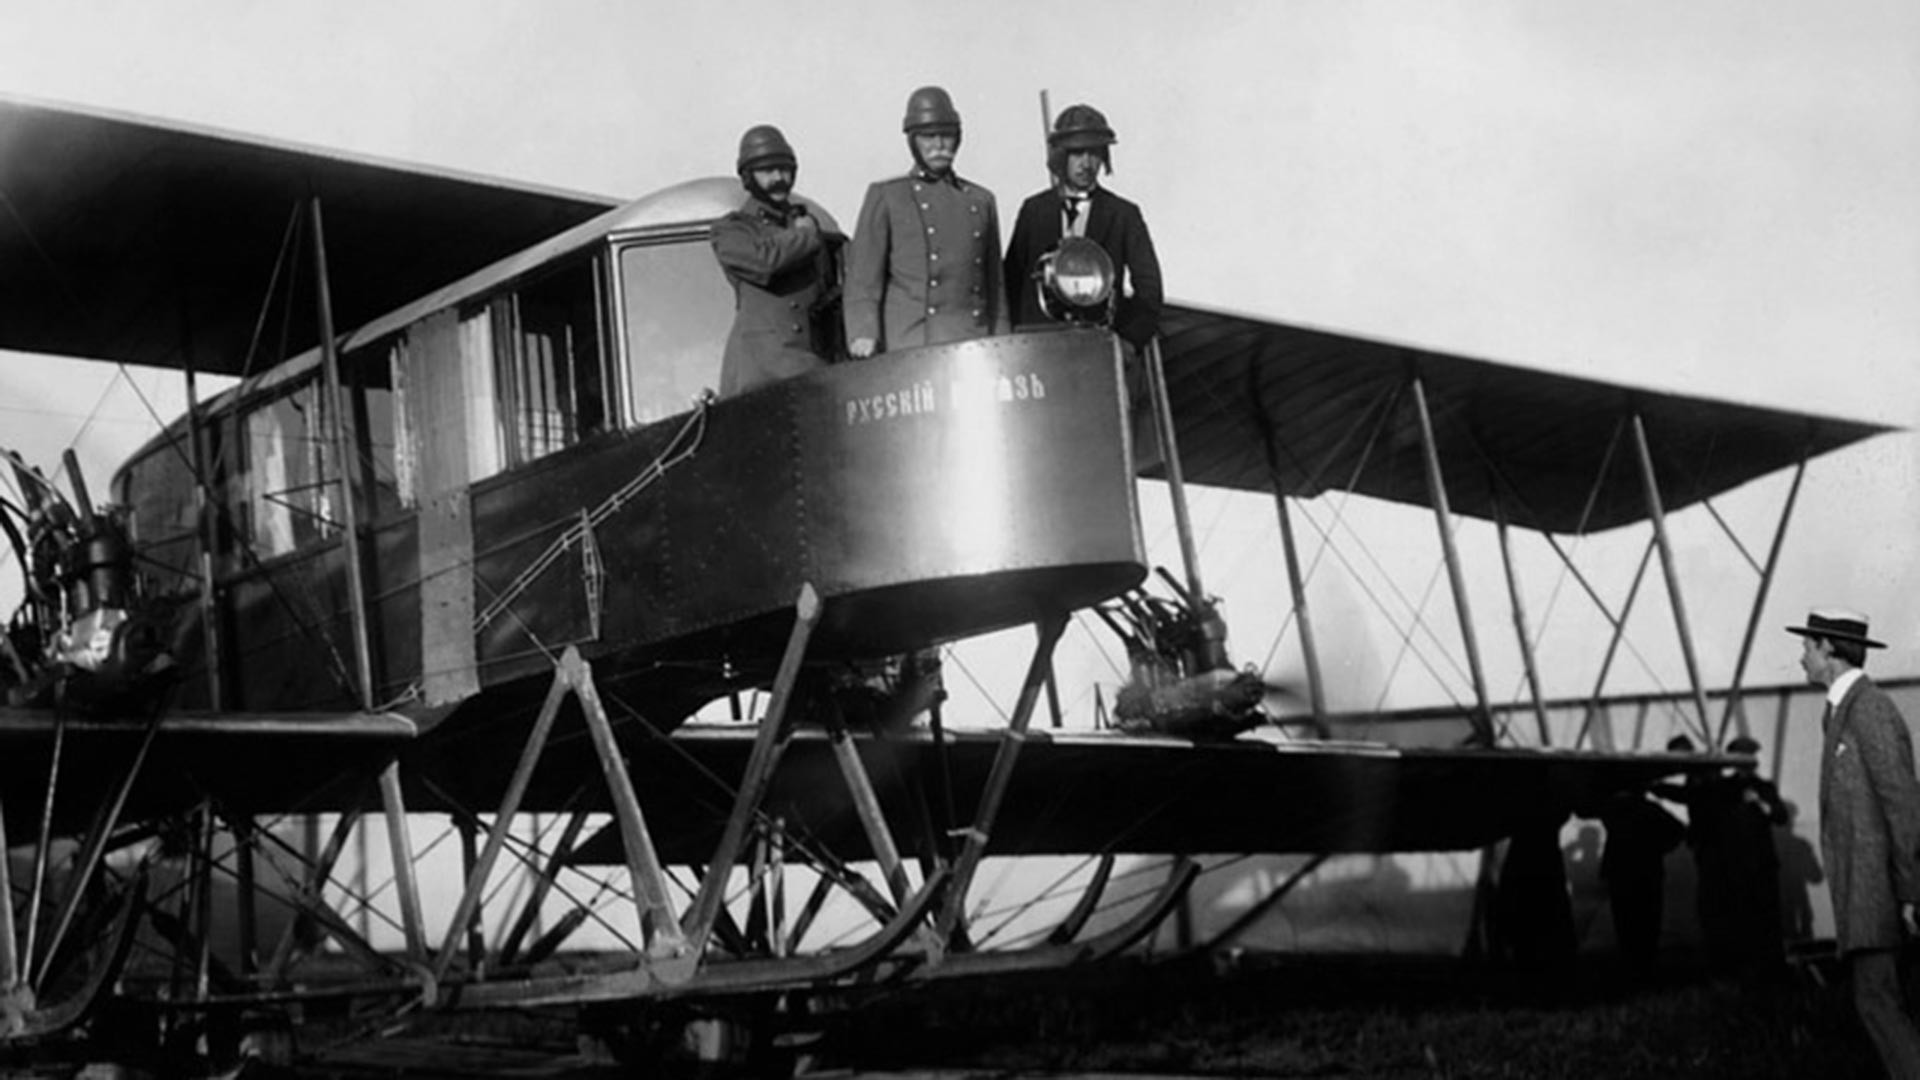 Le pionnier de l'aviation Igor Sikorsky (à droite) à bord de l'avion russe Rousski Vitiaz